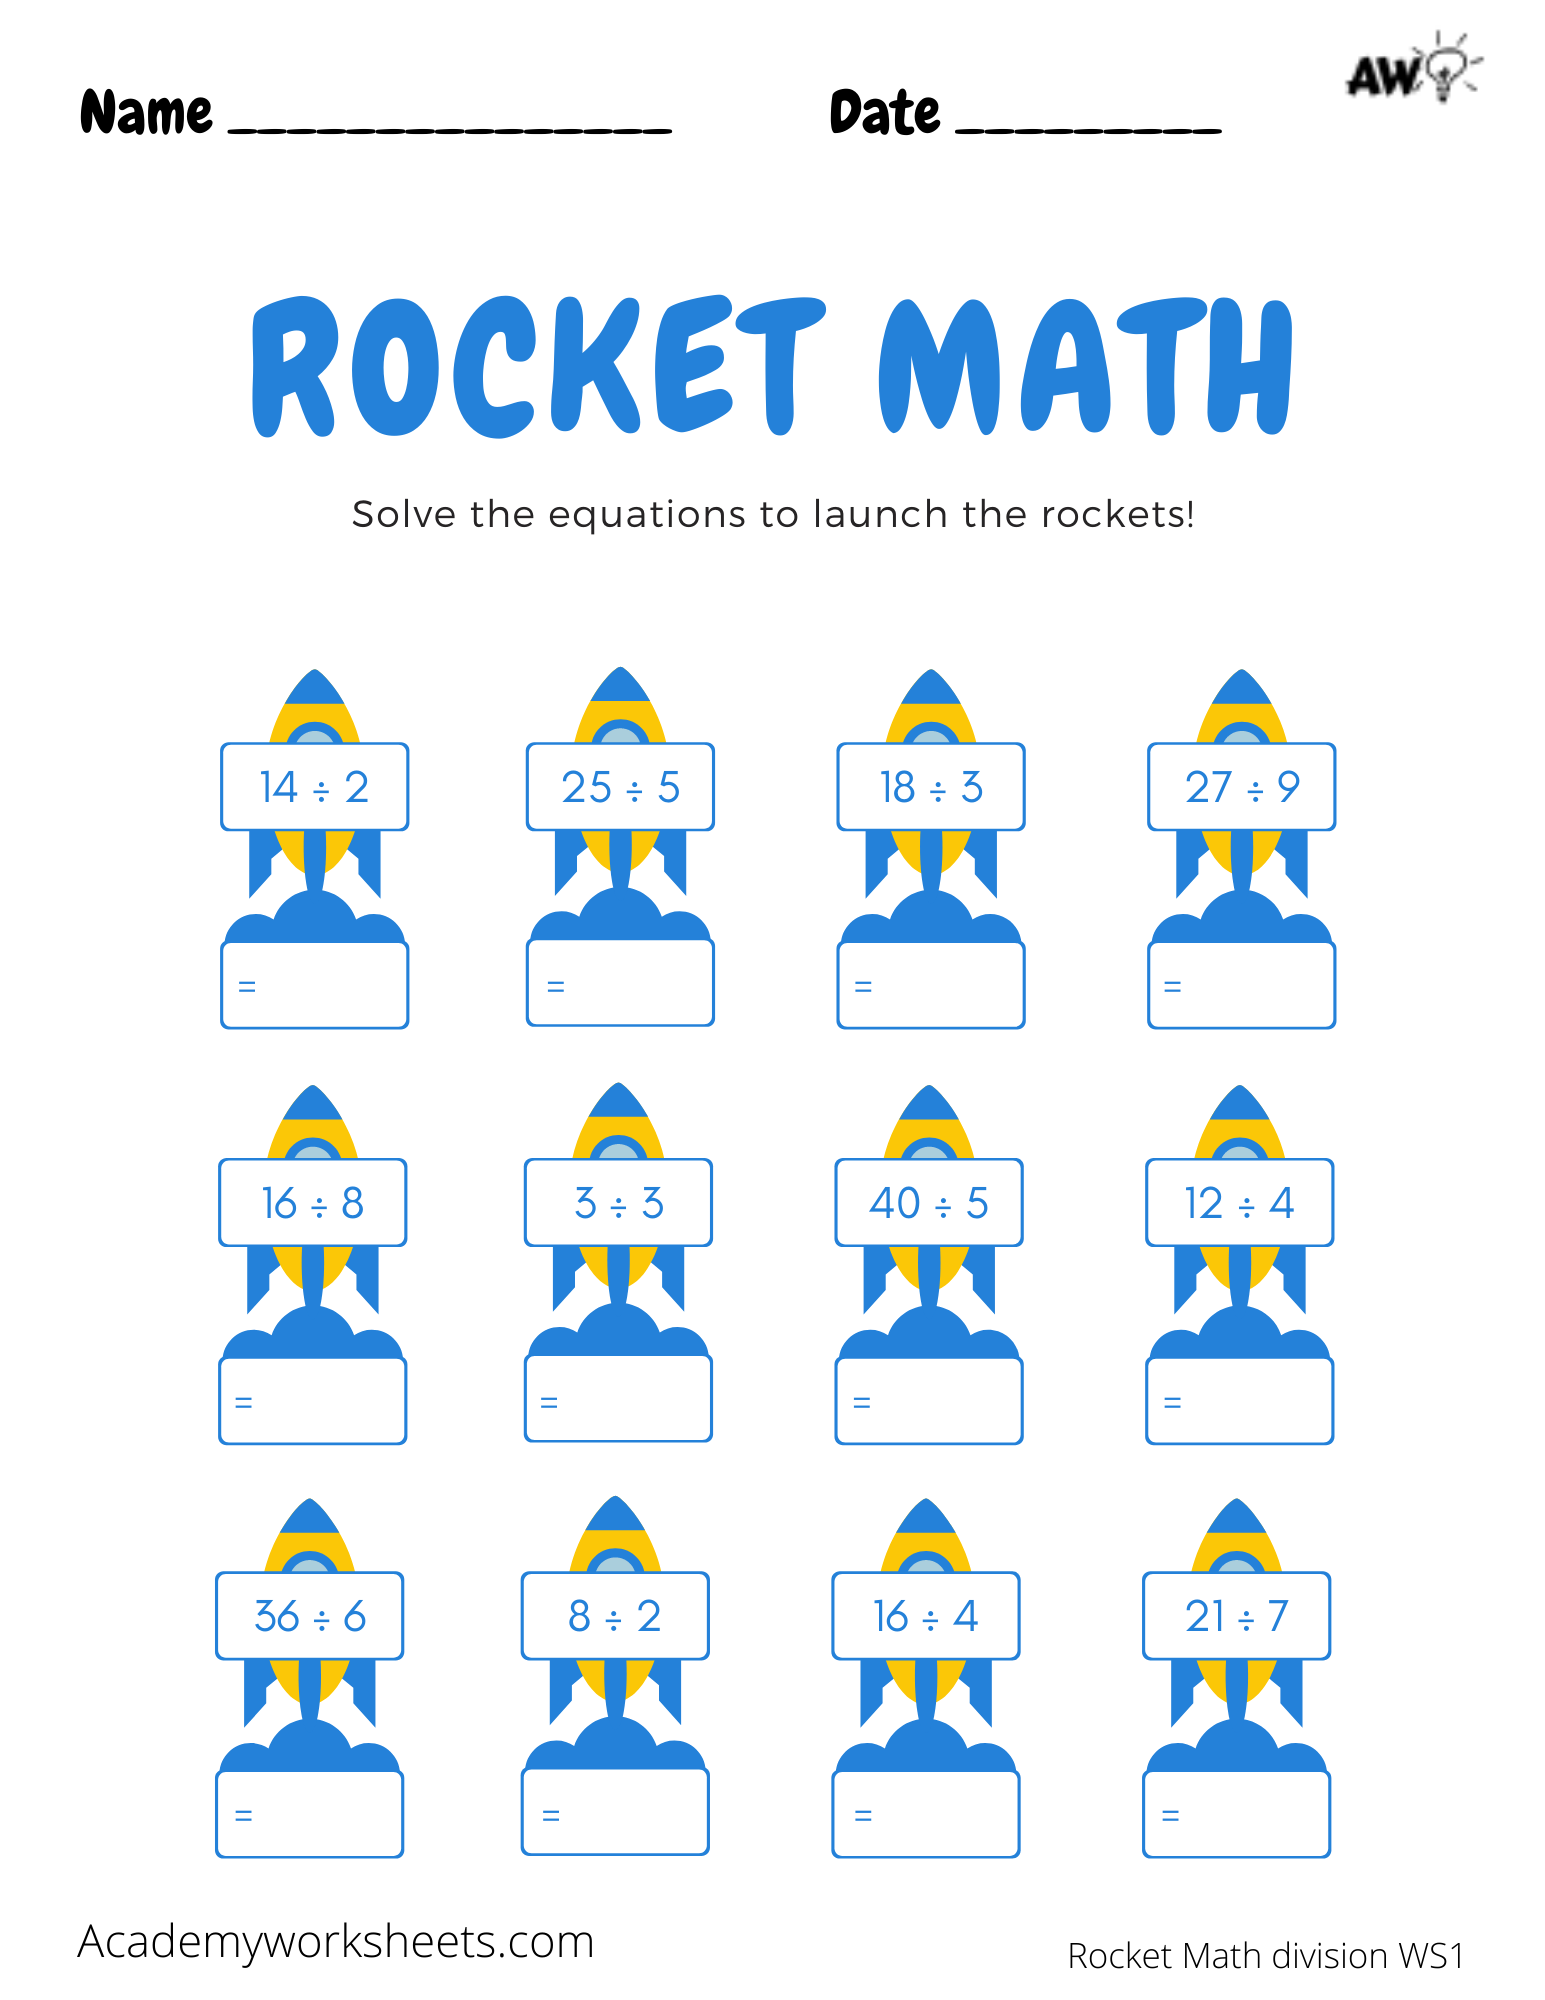 rocket-math-worksheets-division-academy-worksheets